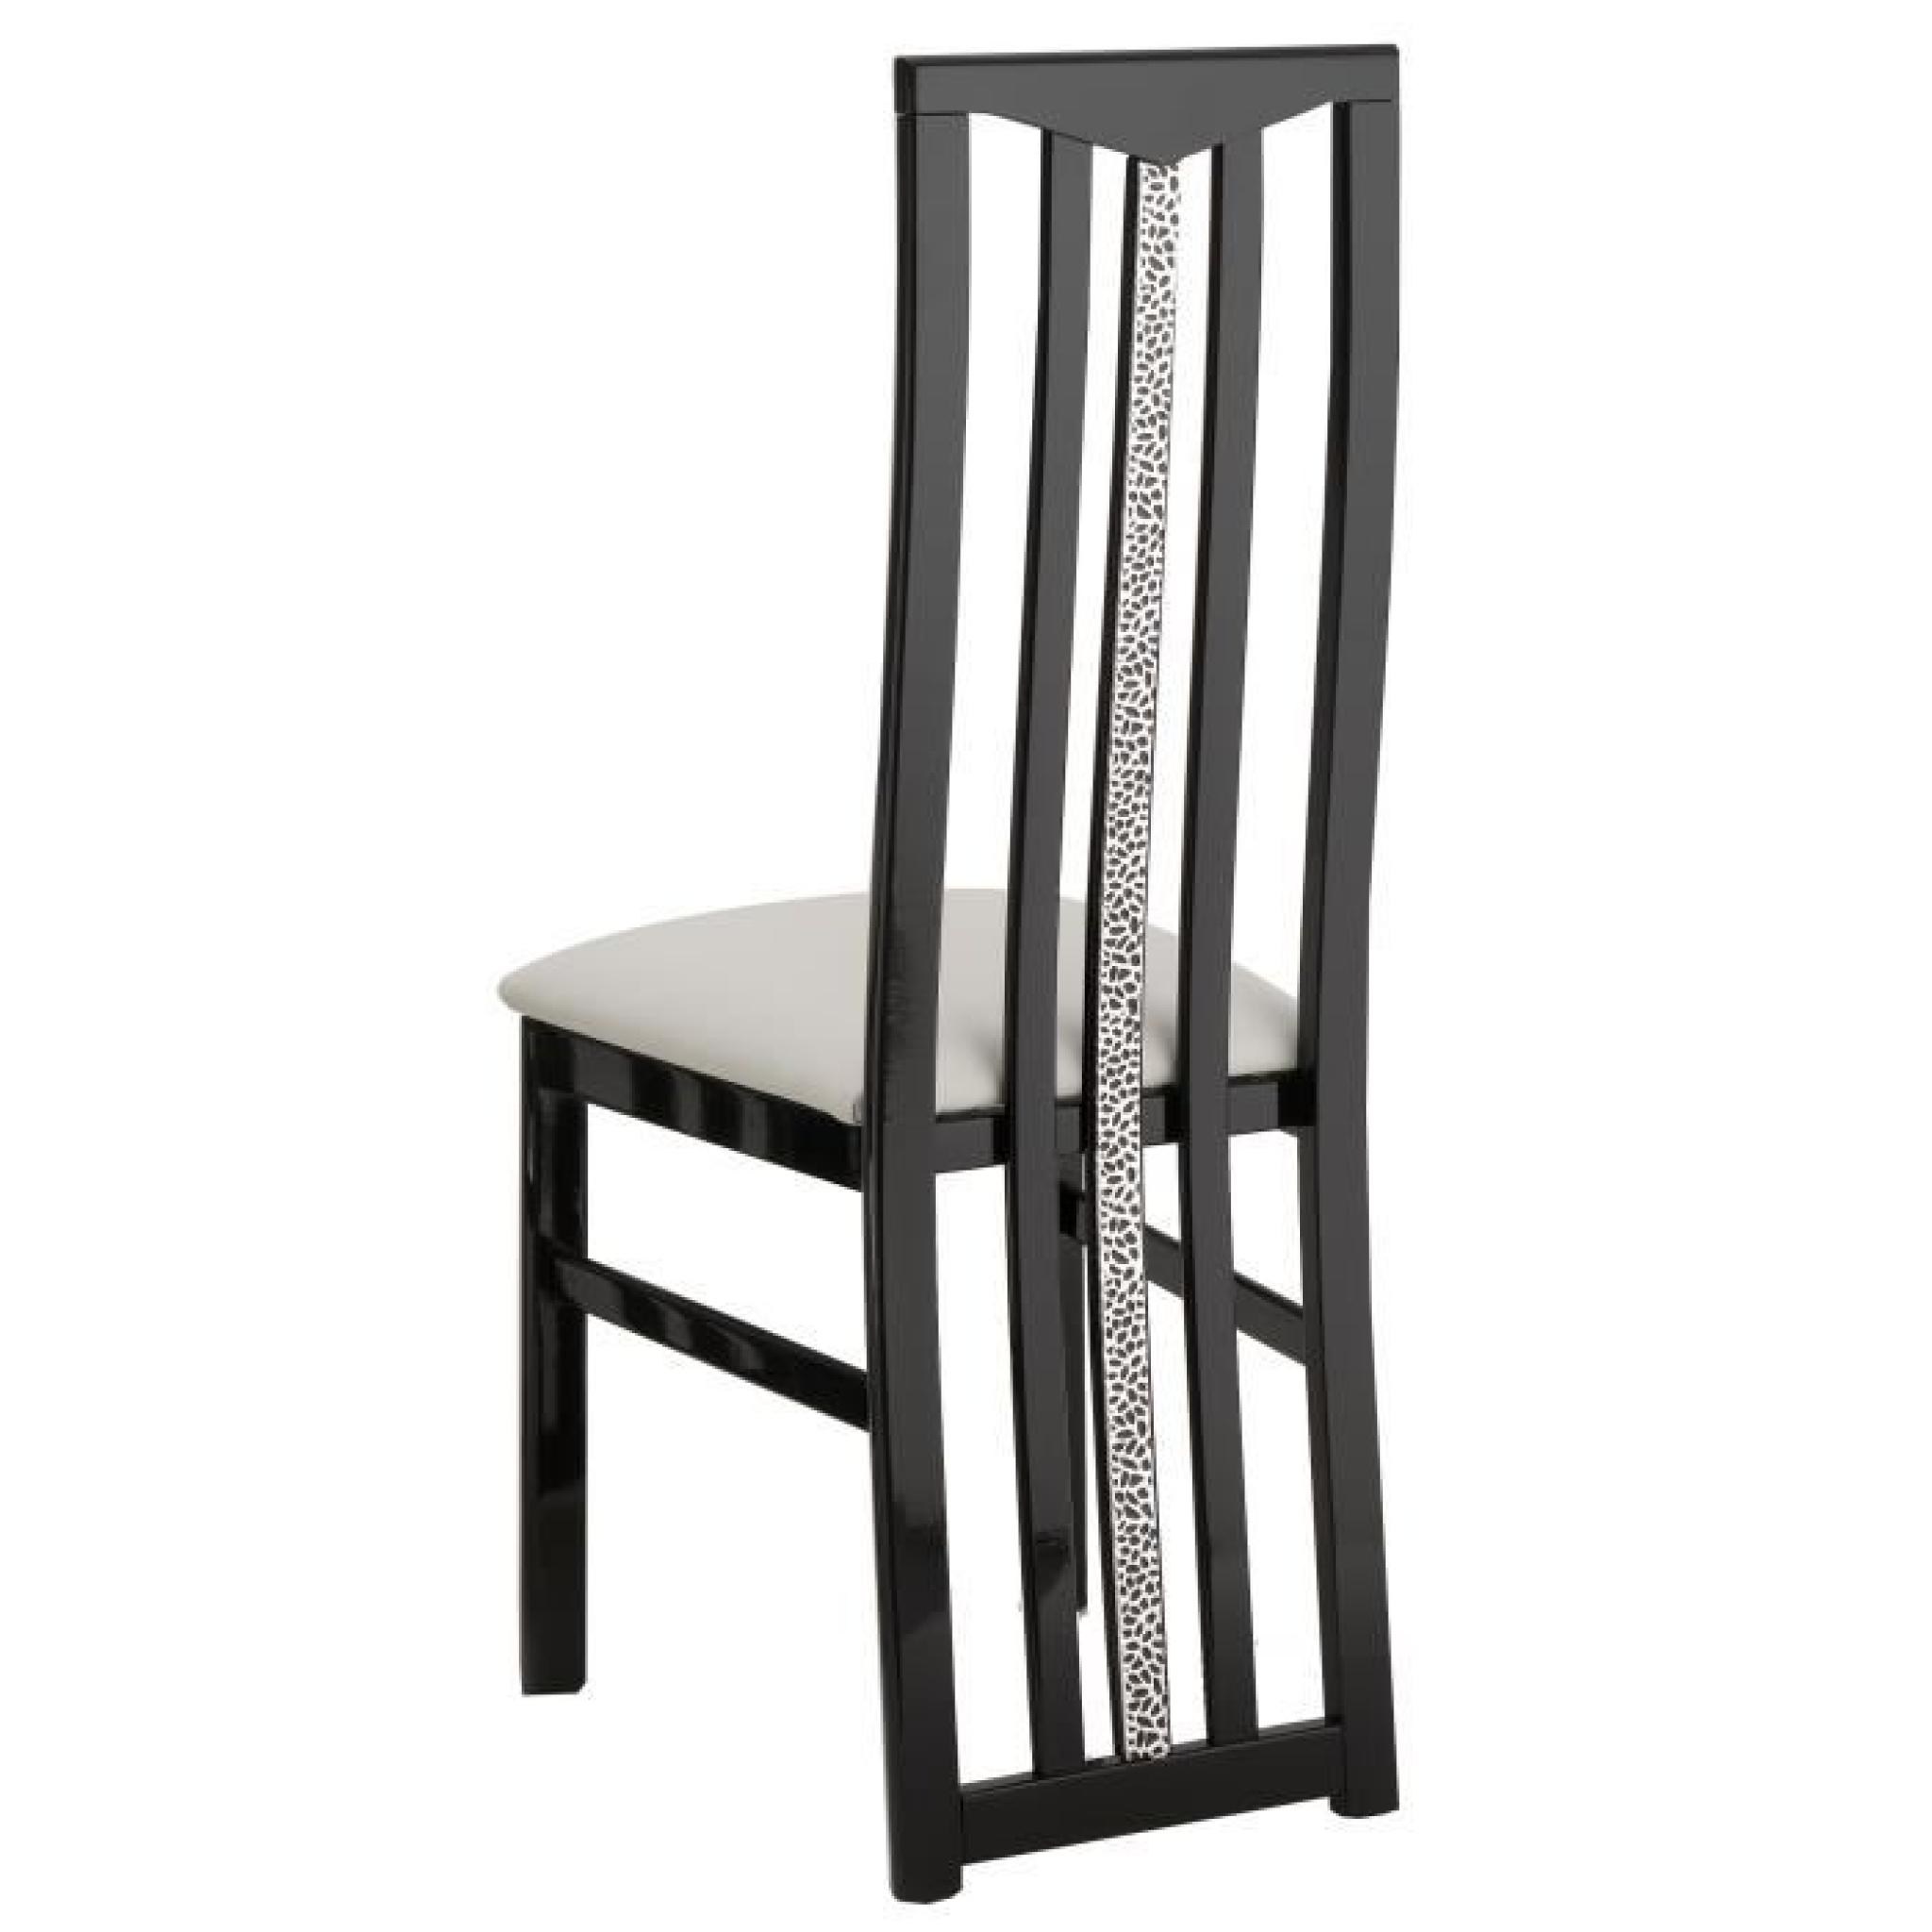 Table à manger 160cm + 4 chaises noires et blanches pas cher